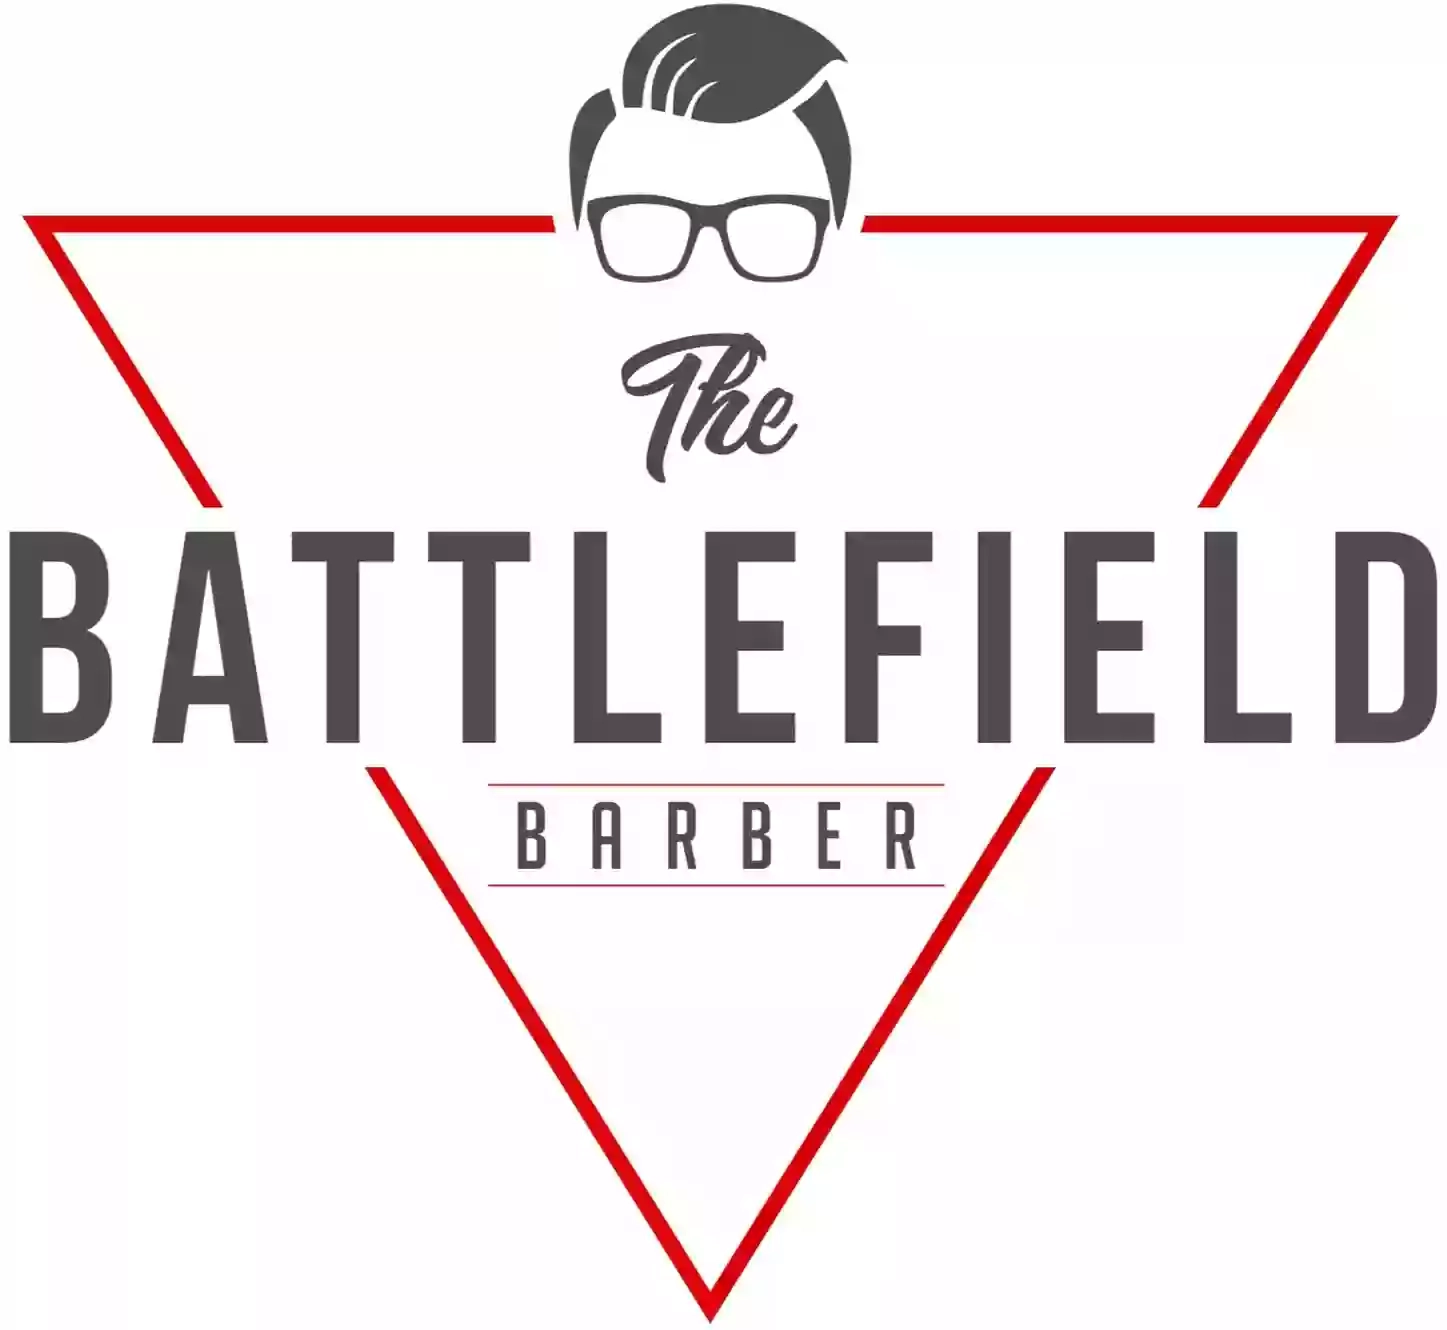 Battlefield Barbers